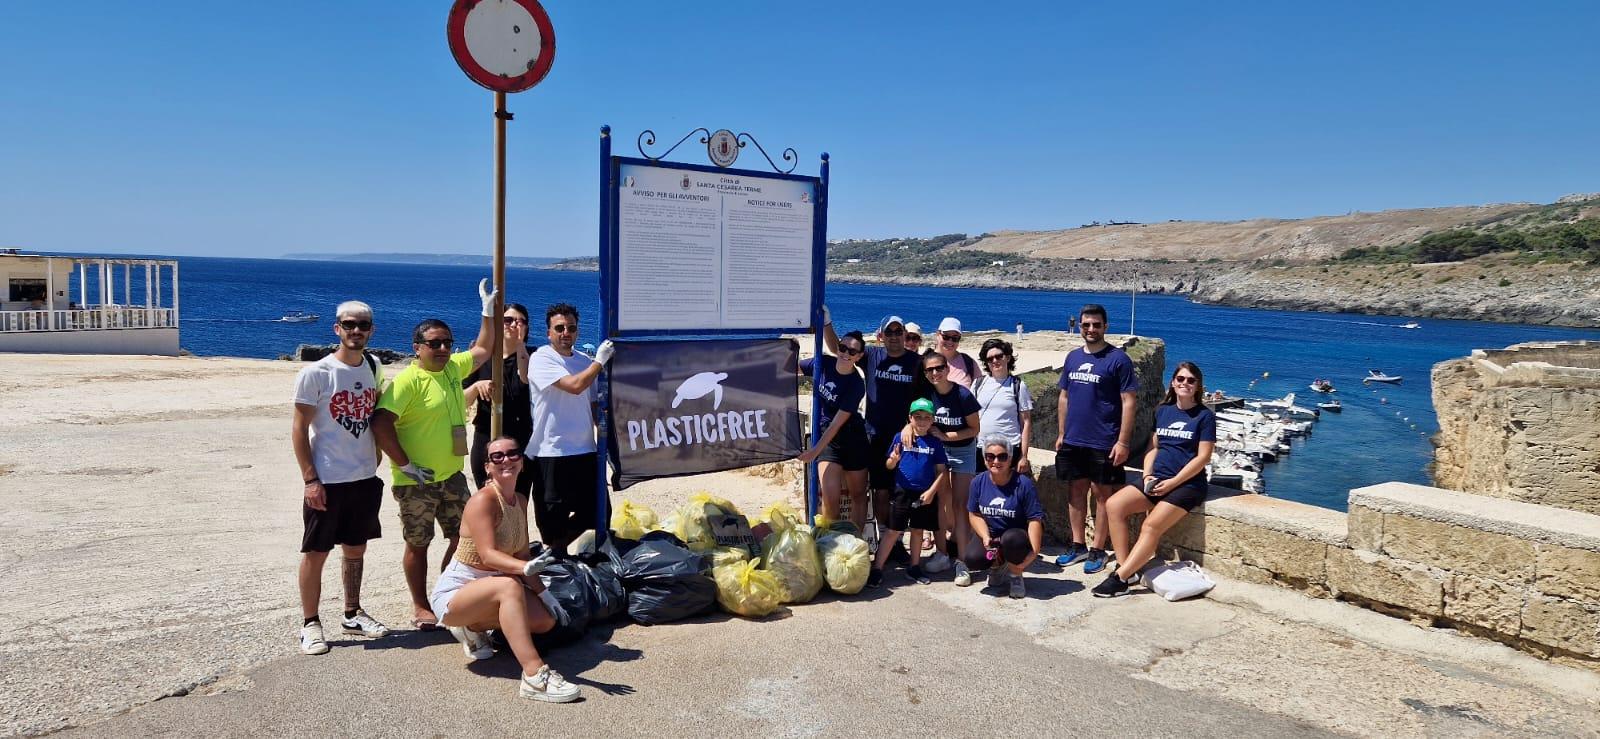 Plastic Free e Panorama Festival liberano dai rifiuti la spiaggia di Porto Miggiano a Santa Cesarea Terme (LE)